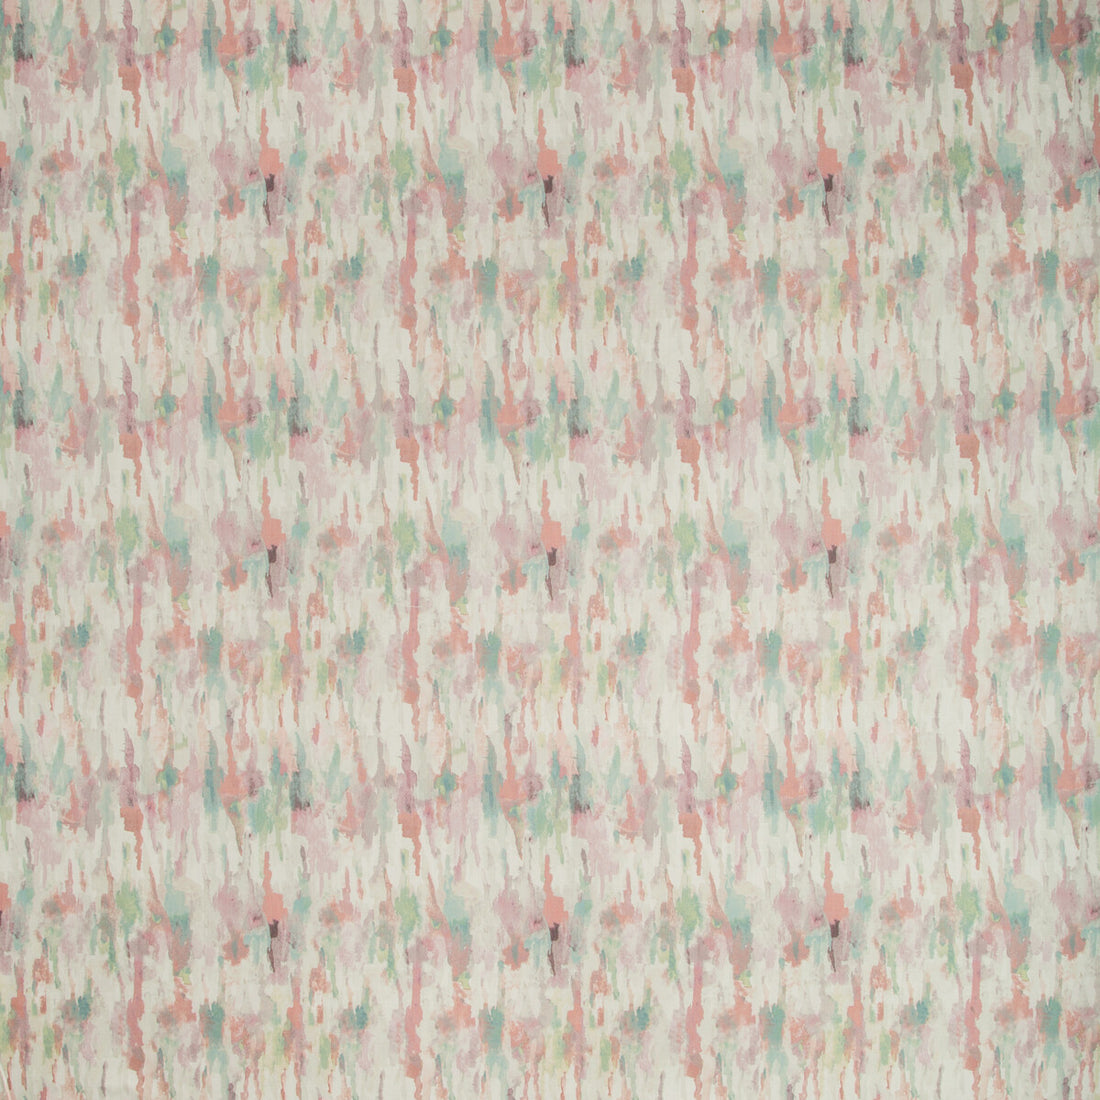 Kravet Basics fabric in freckled-713 color - pattern FRECKLED.713.0 - by Kravet Basics